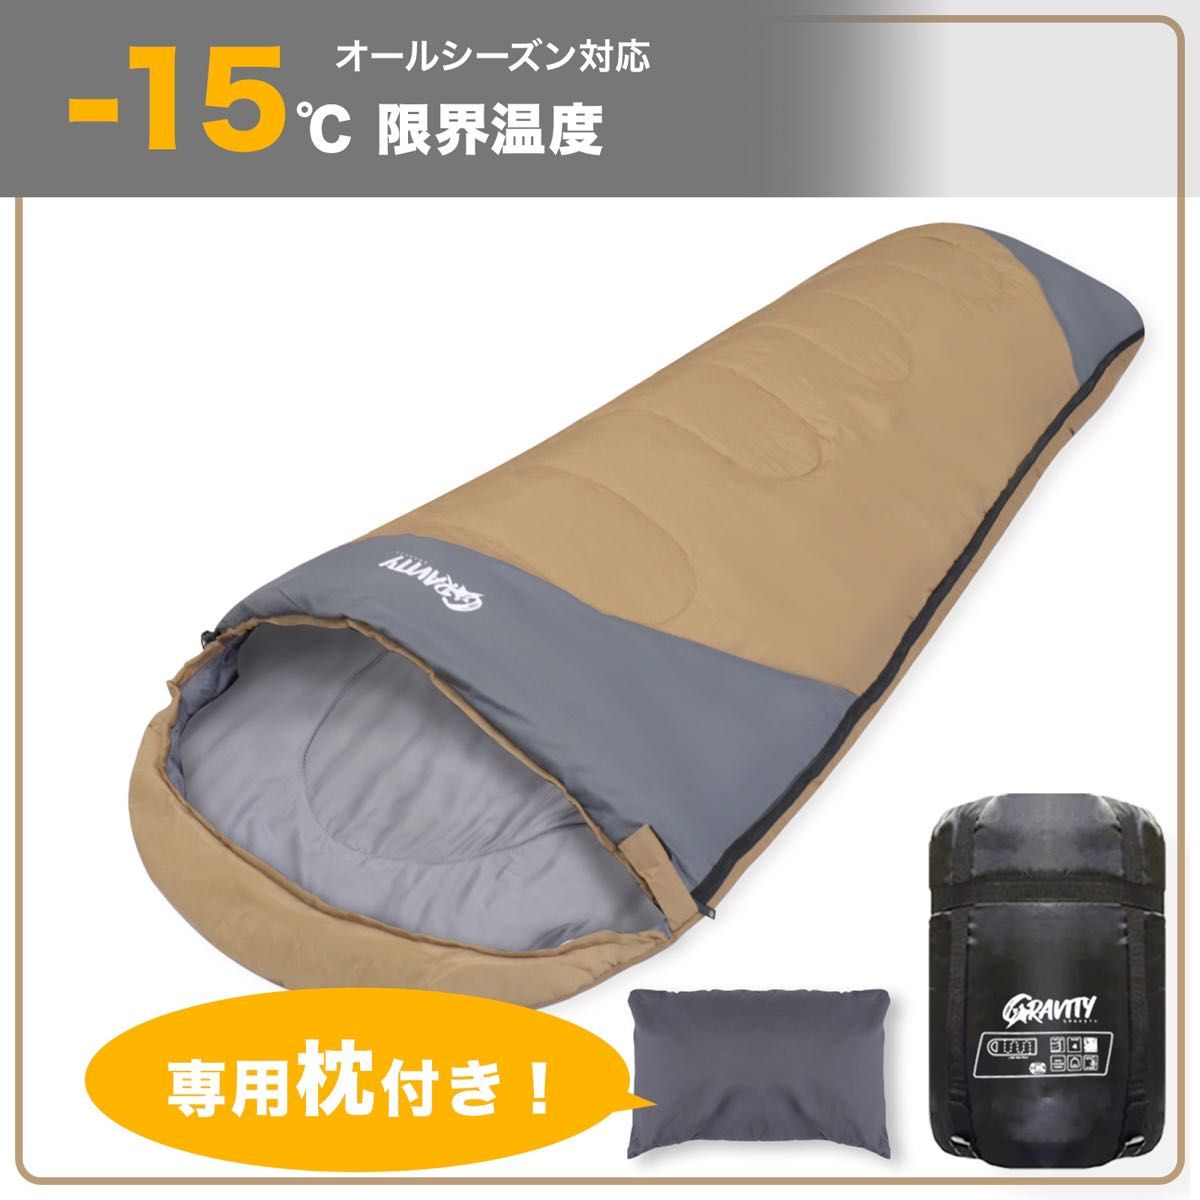 新品 寝袋 シュラフ 枕付き 丸洗い可能 防災 旅行 車中泊 アウトドア キャンプ 来客用 210T ダークグリーン